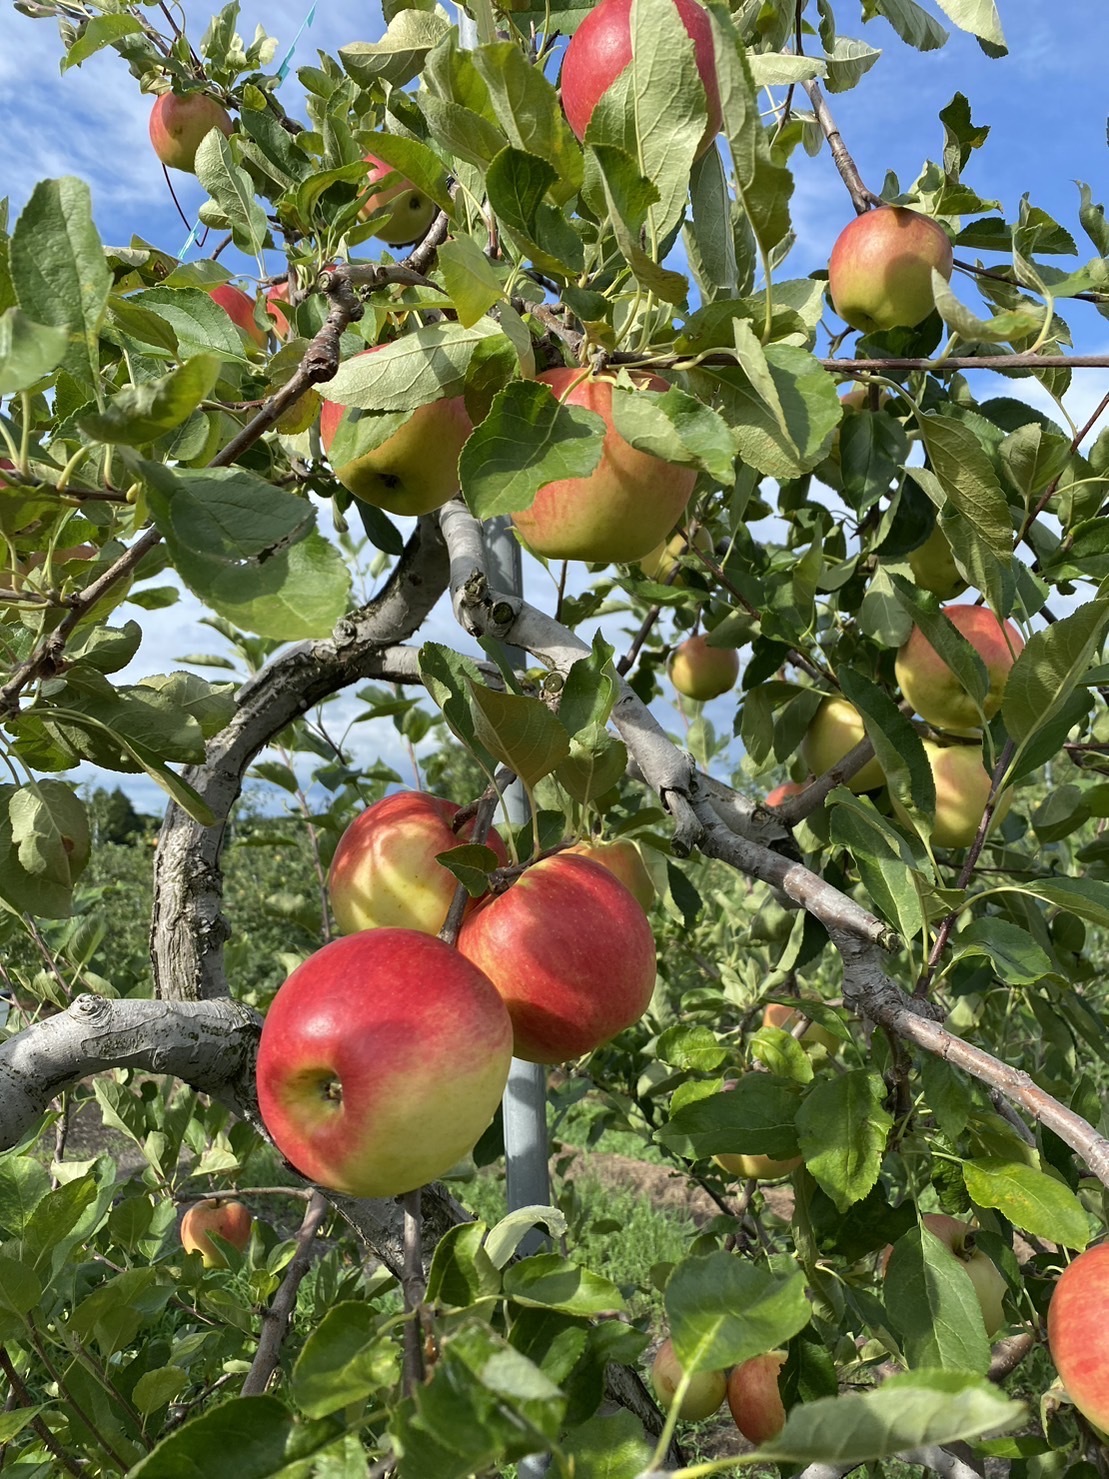 盛岡市】食欲の秋です♪ 盛岡で栽培されているりんご「さんさ」の収穫